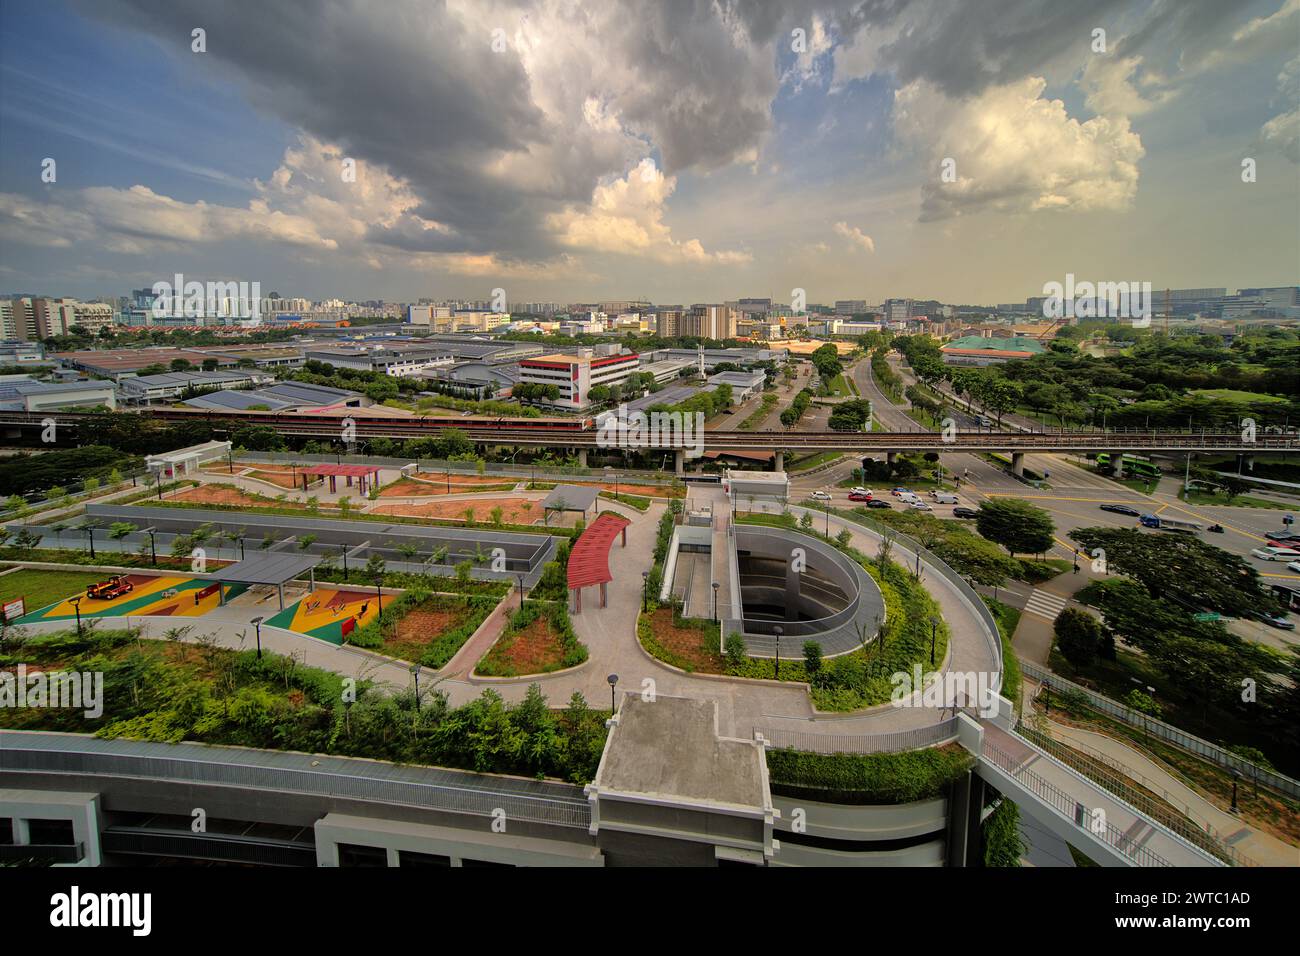 Boon Lay è un quartiere situato nella città di Jurong West, nella regione occidentale di Singapore. La parte esposta a sud è costituita principalmente da fabbriche e industrie. Foto Stock